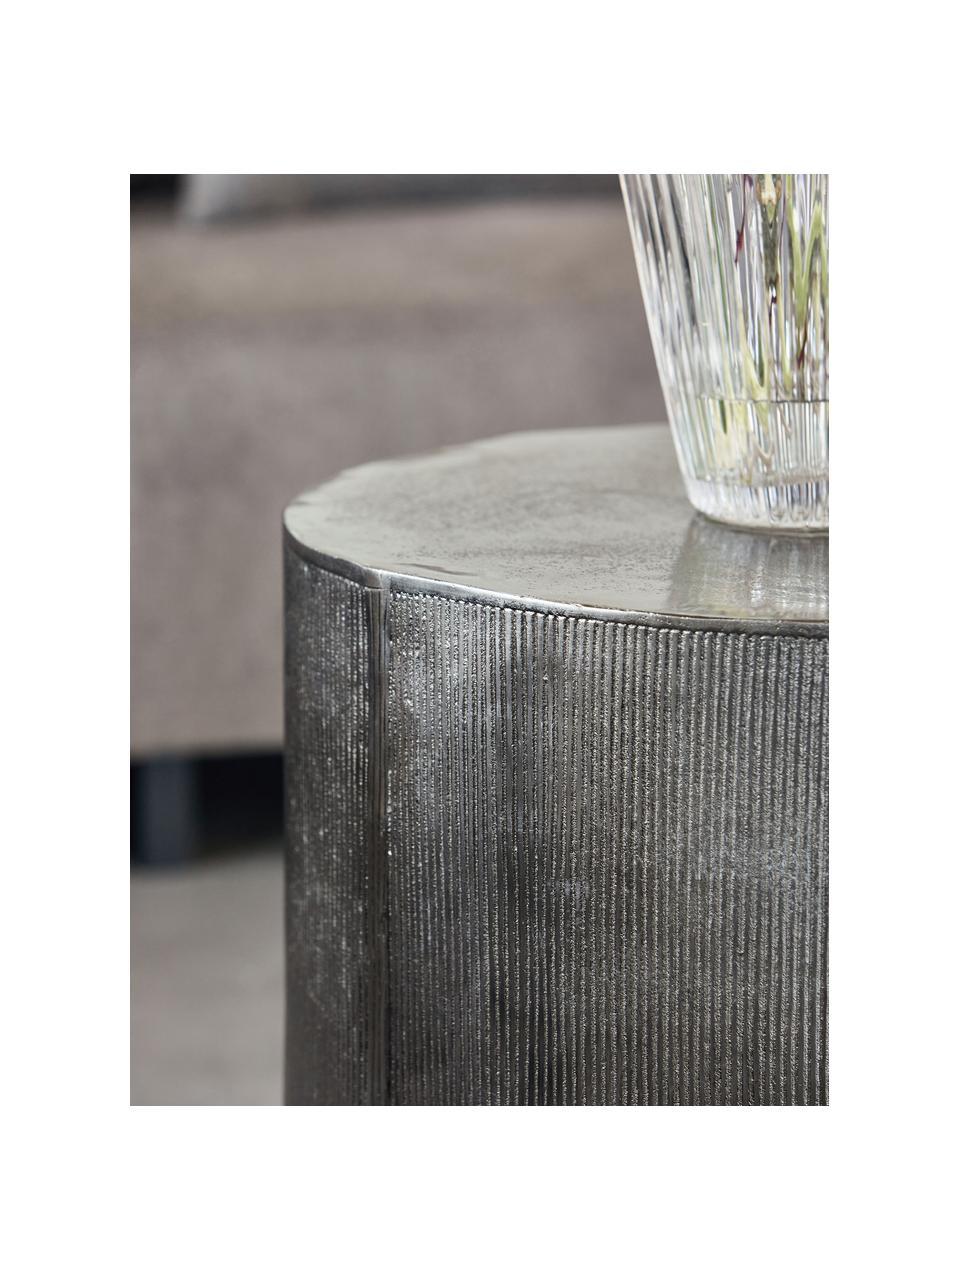 Table d'appoint ronde façade nervurée Rota, Aluminium, enduit, MDF (panneau en fibres de bois à densité moyenne), Couleur argentée, Ø 50 x haut. 50 cm